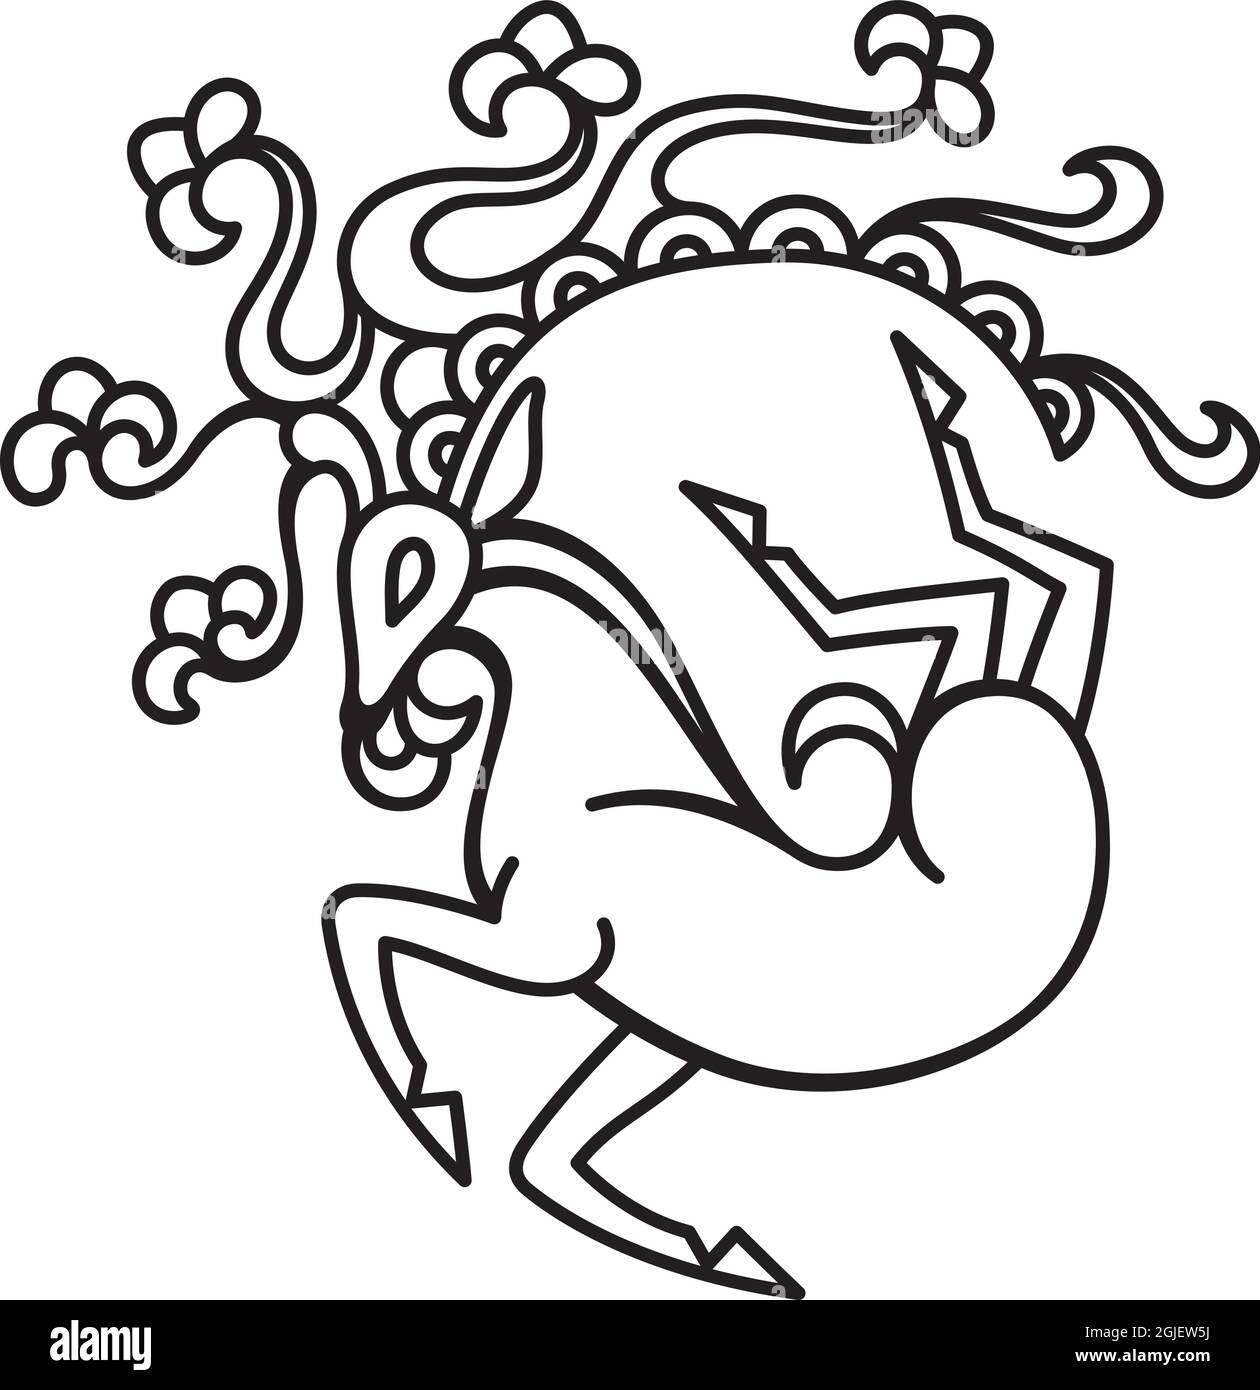 Siberiano Ice Maiden Tattoo Design. Cervi running con corna ornate e fiori basati sul tatuaggio della principessa siberiana mummificata di 2500 anni. Illustrazione Vettoriale